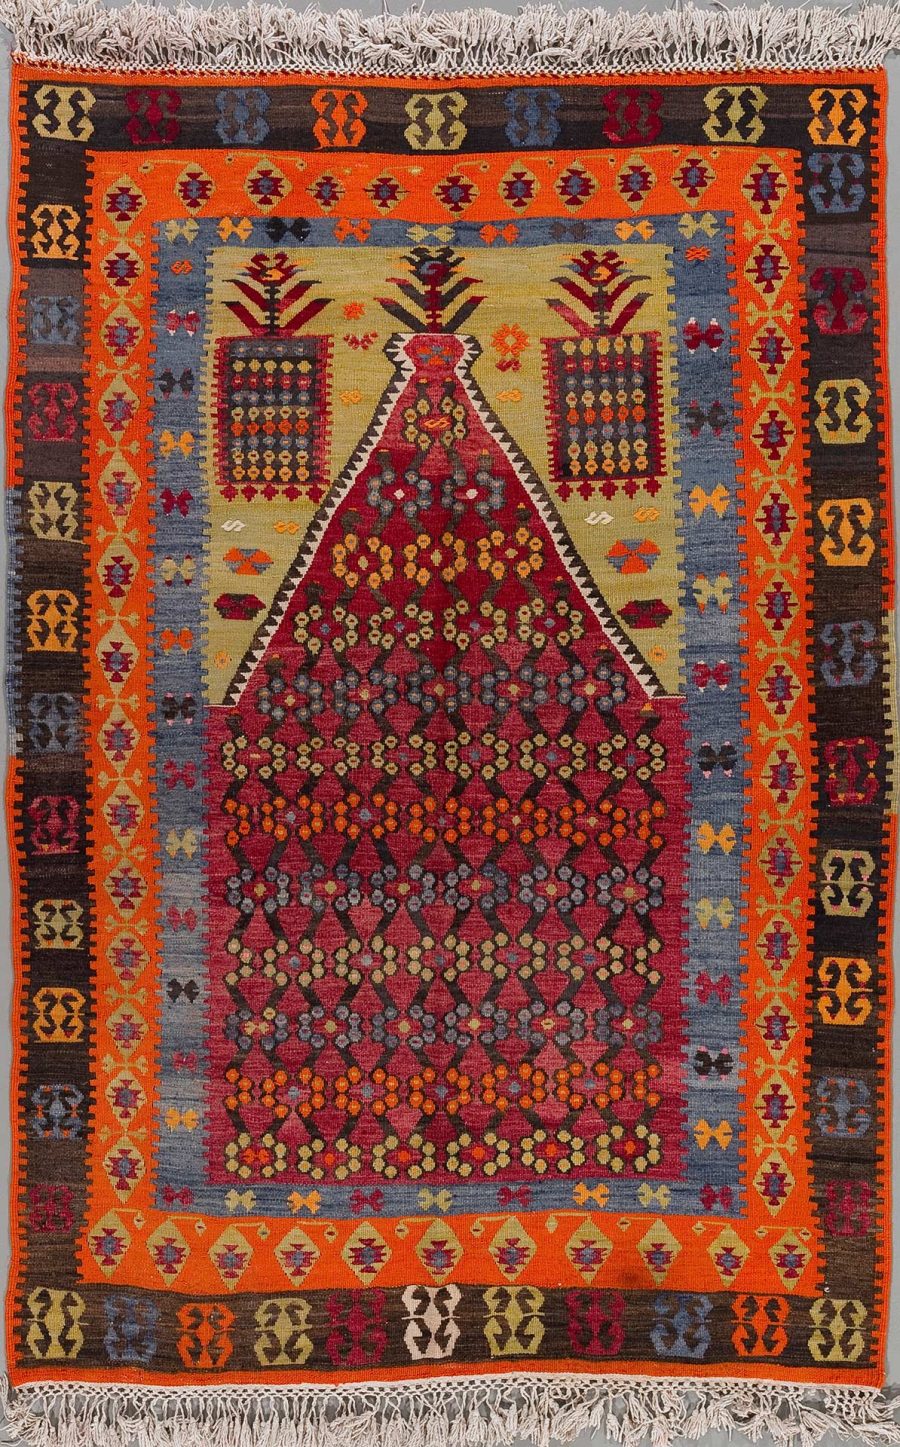 Handgeknüpfter Teppich mit reicher geometrischer Musterung und Blumenmotiven in lebendigen Farben von Rot, Blau, Orange und weiteren, abgerundet mit Fransen an den Enden.